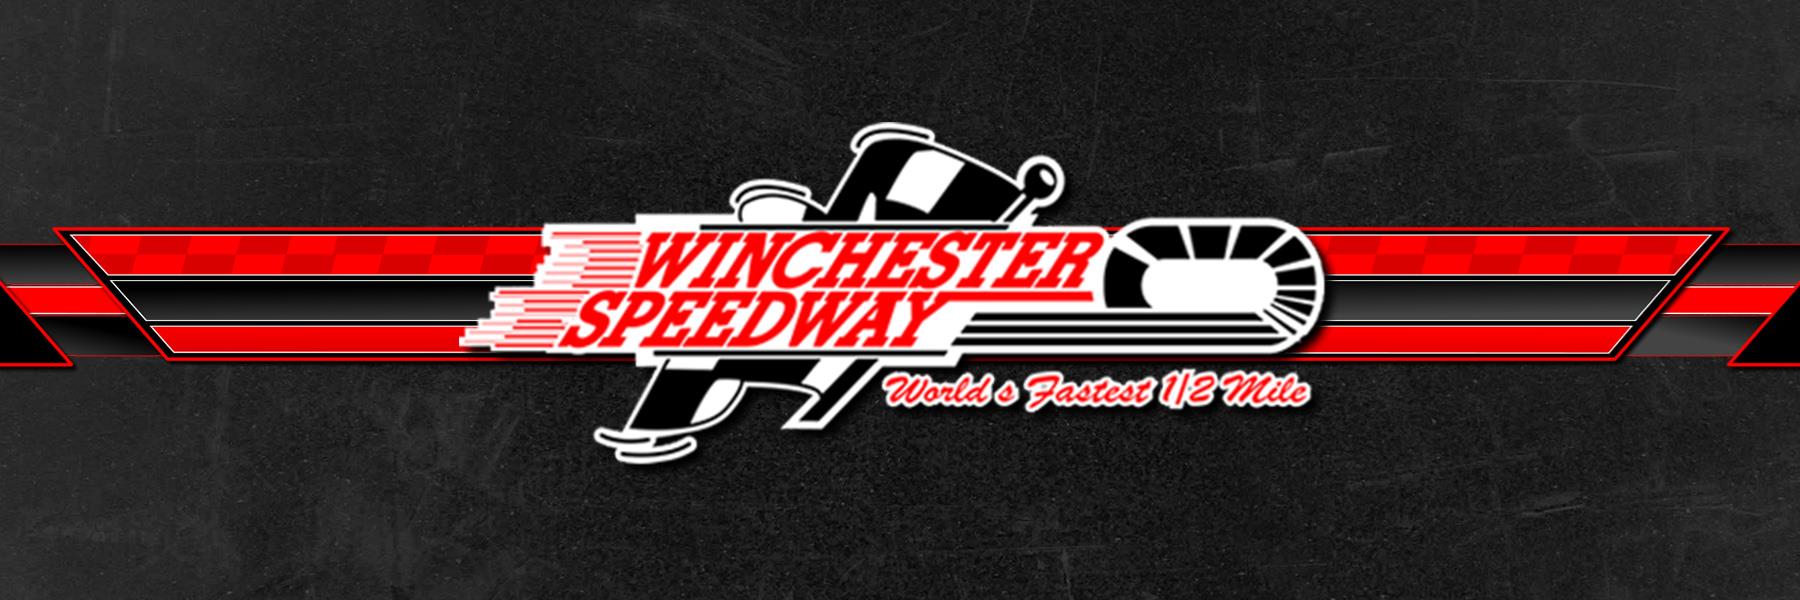 8/10/2008 - Winchester Speedway